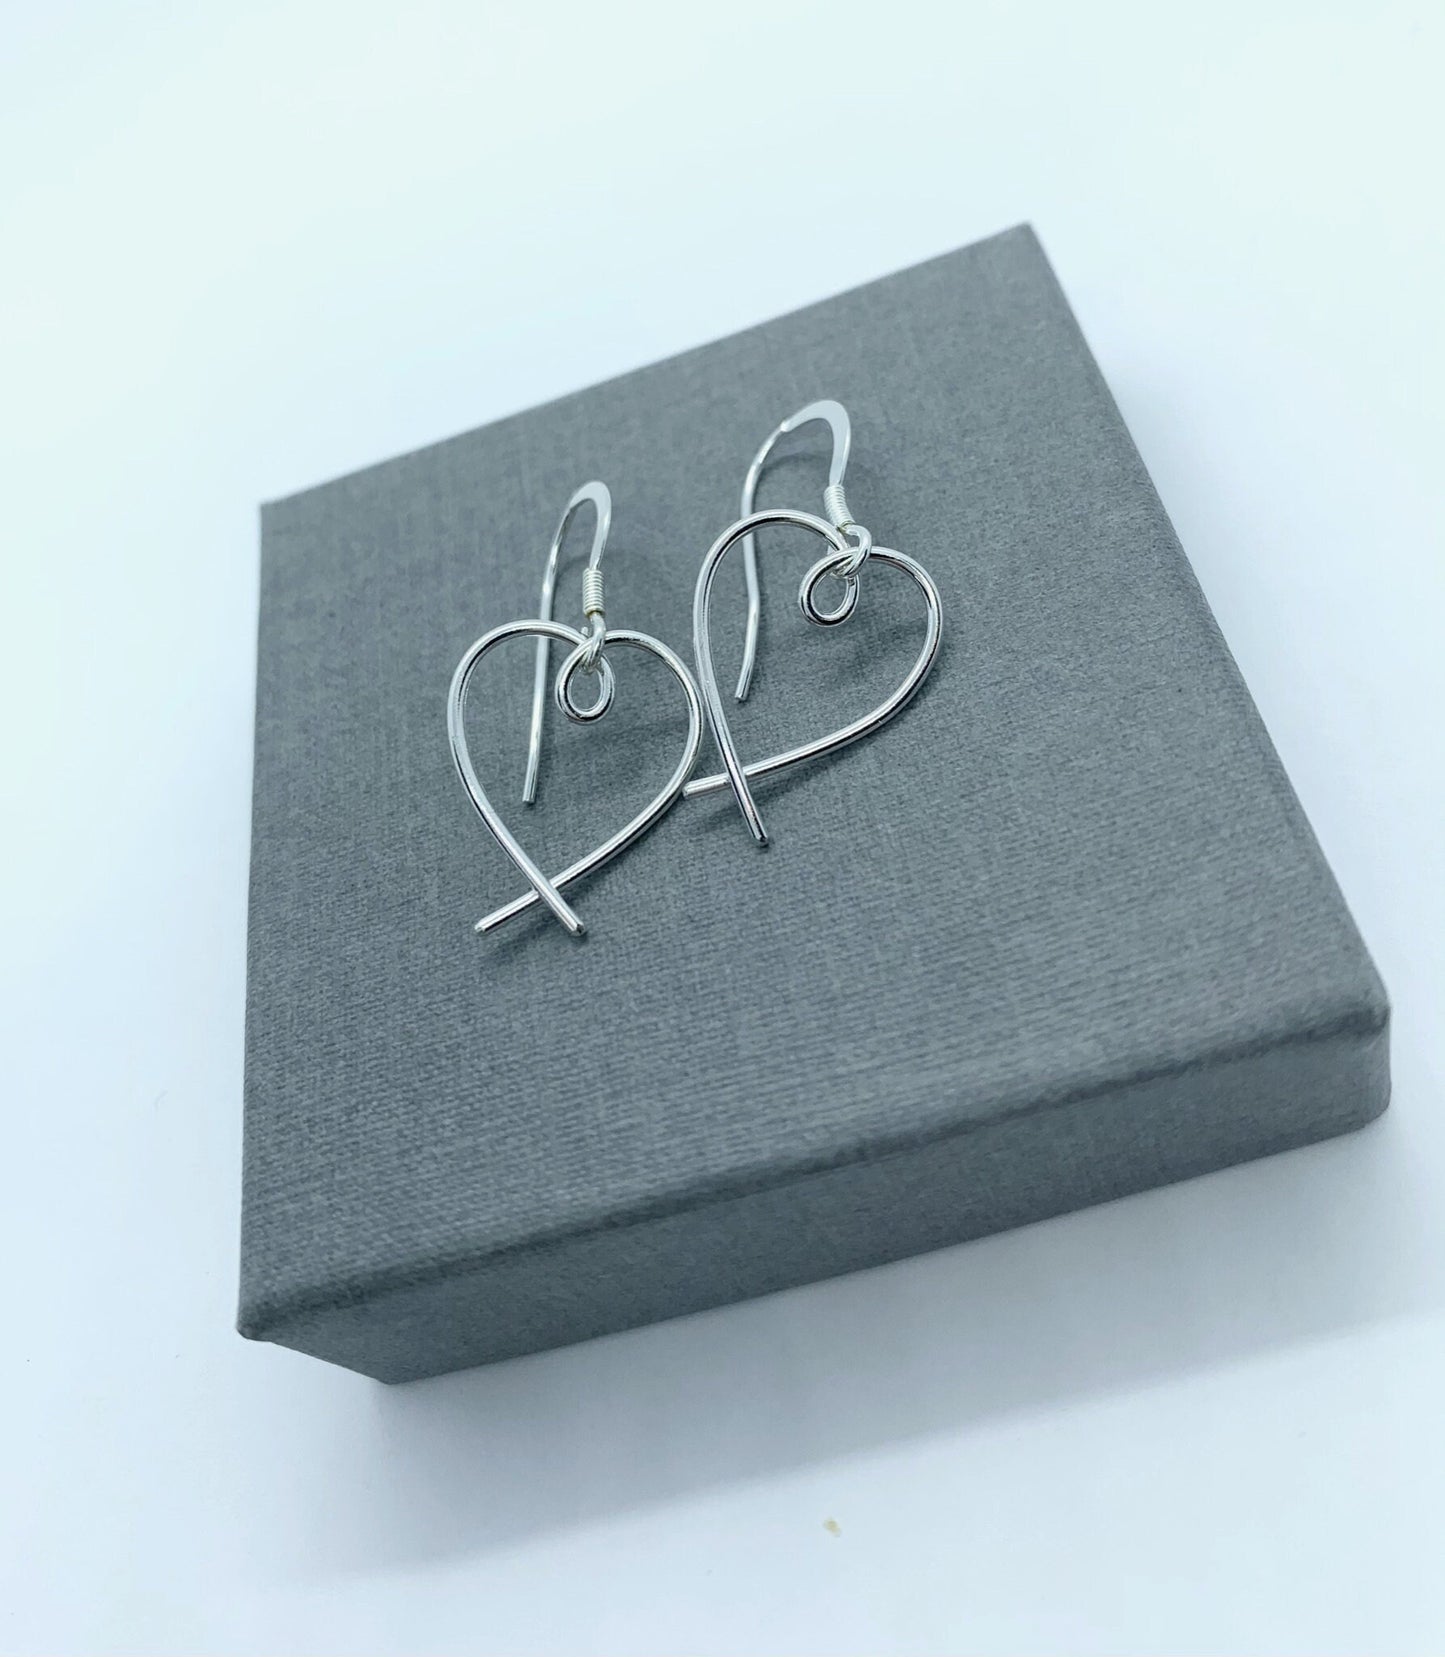 Small silver heart earrings